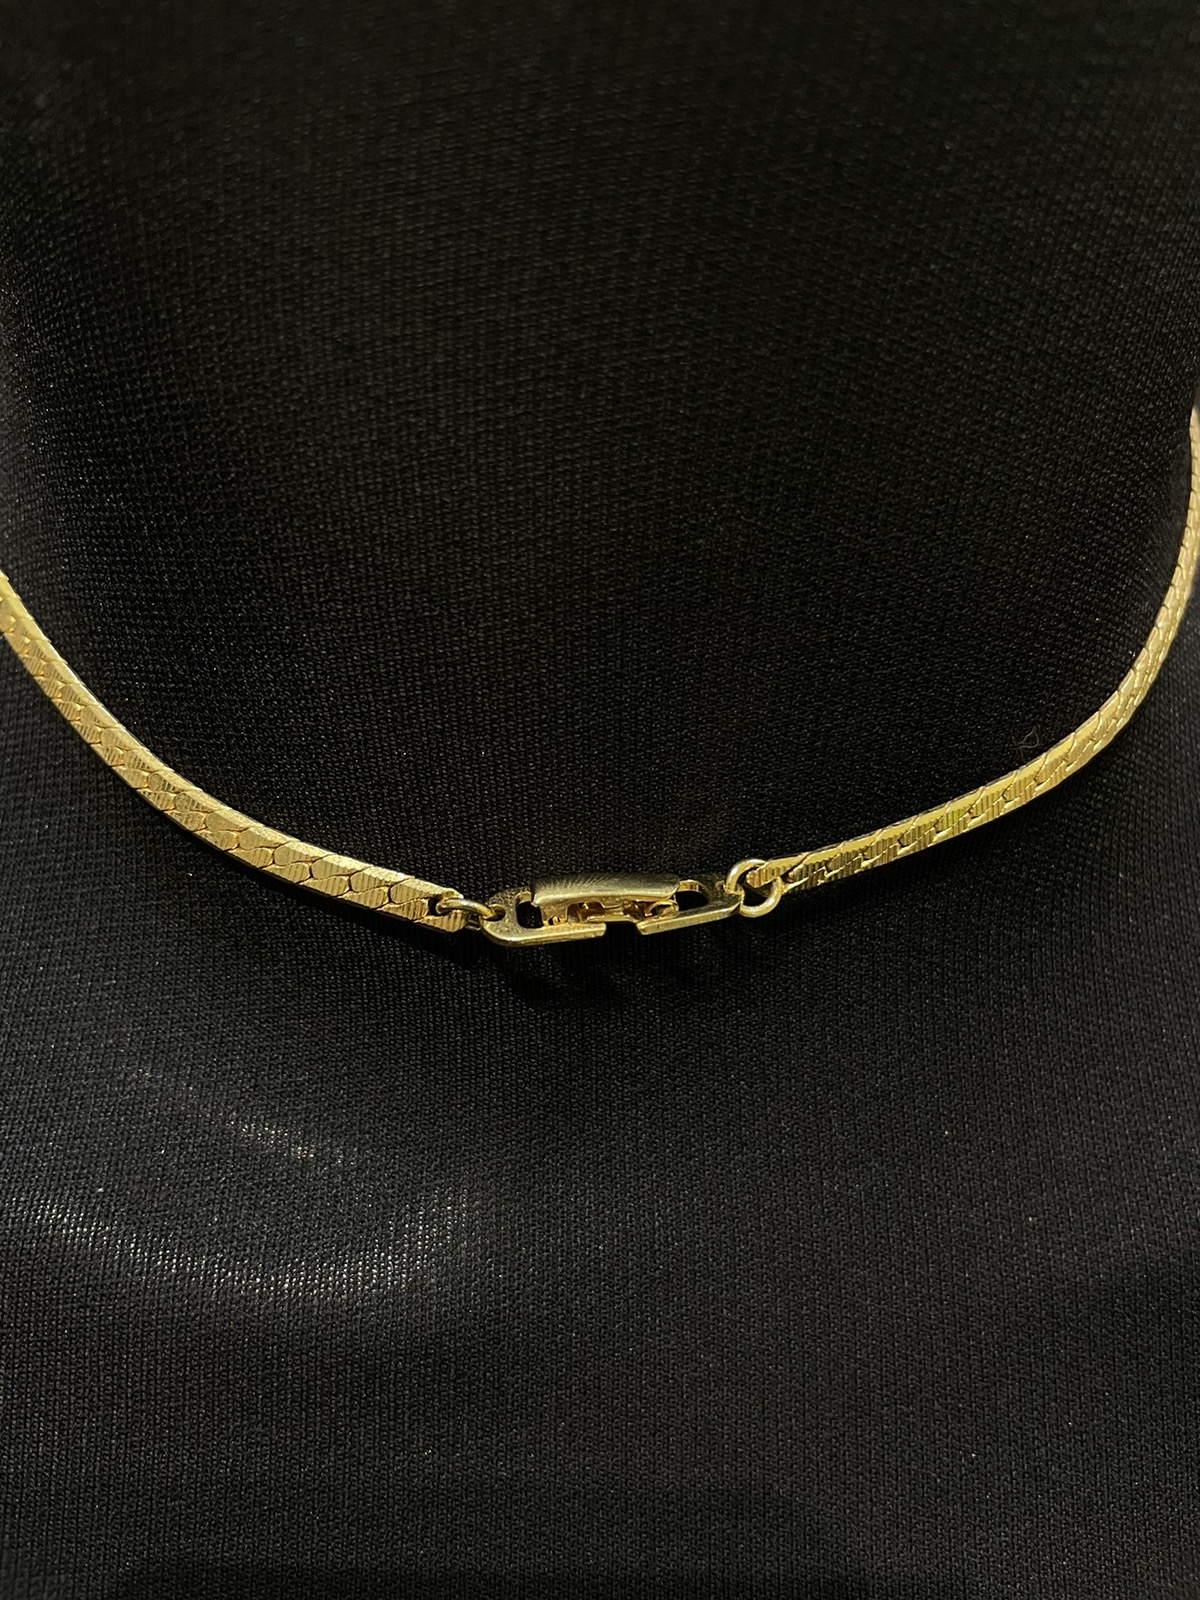 Louis Vuitton /key / Gold Necklace - 8